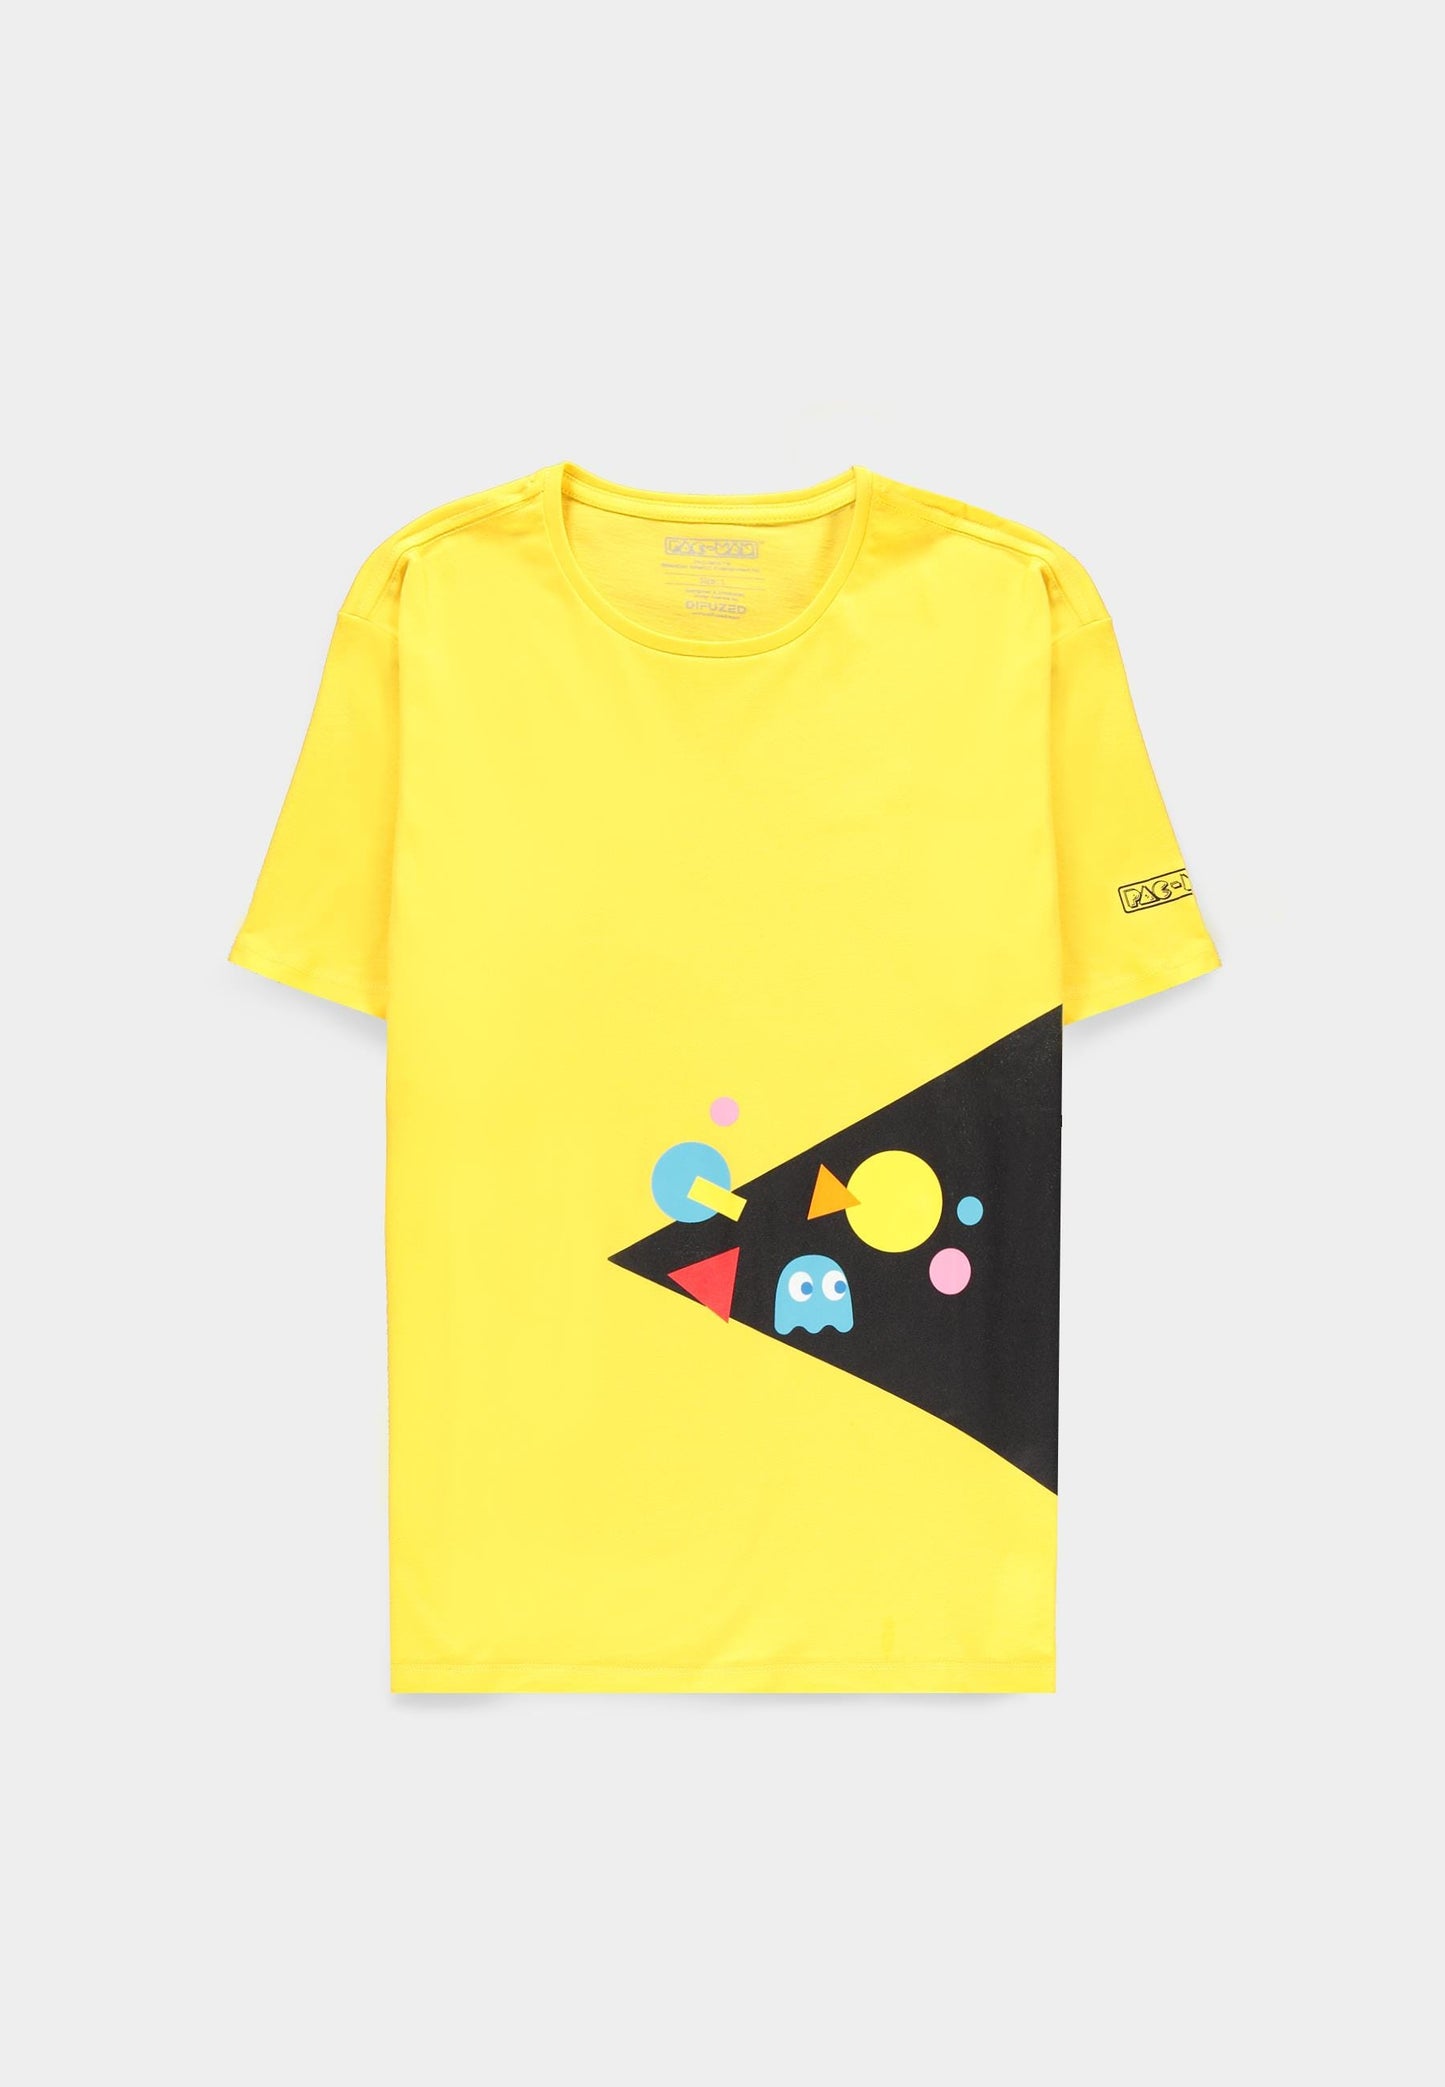 Pac-man - Men's Short Sleeved T-shirt